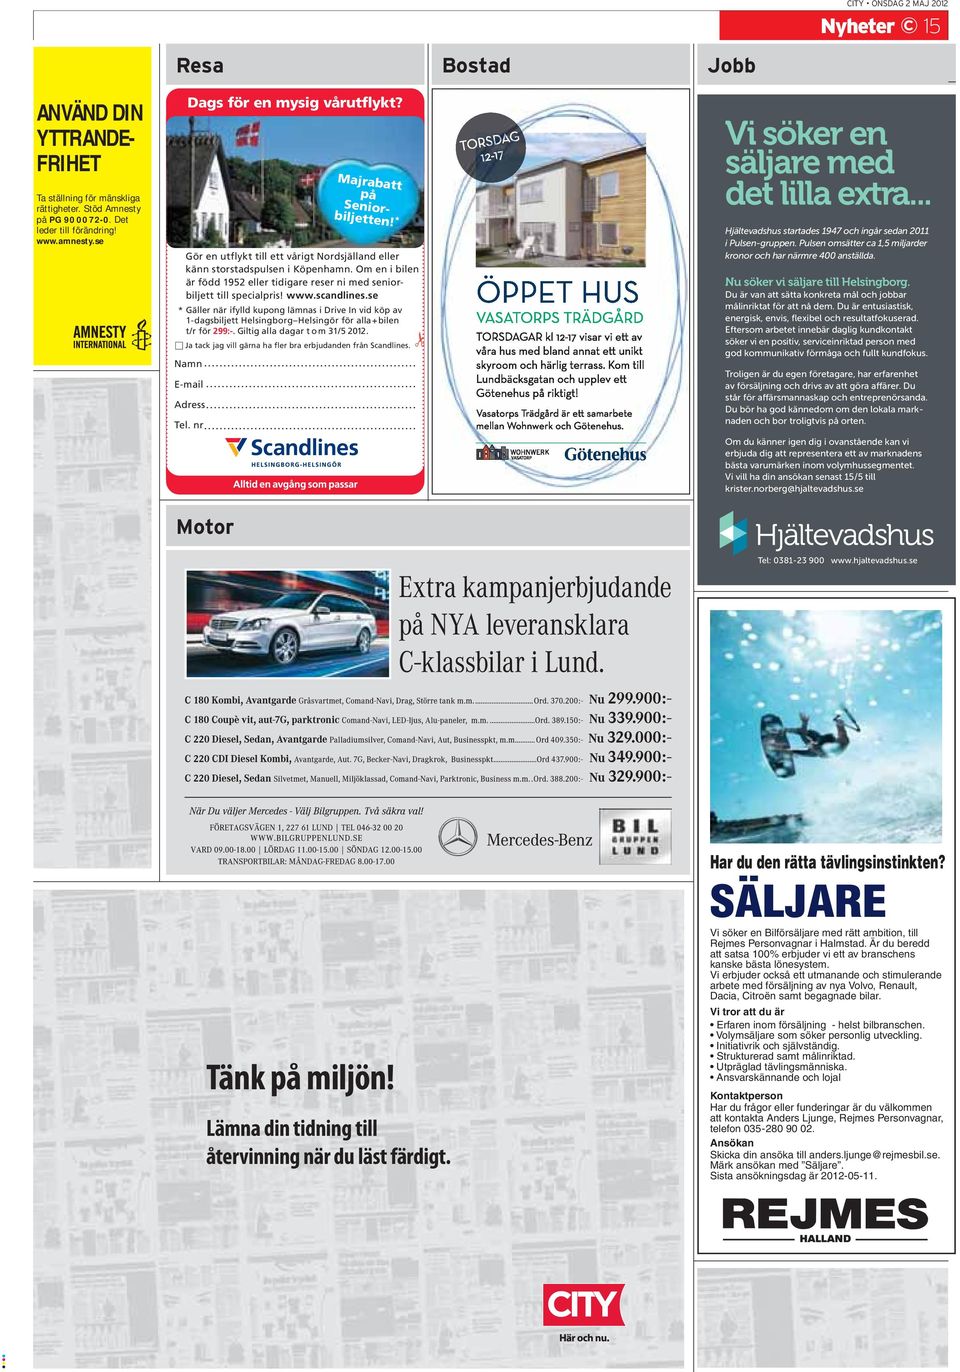 se * Gäller när ifylld kupong lämnas i Drive In vid köp av 1-dagsbiljett Helsingborg Helsingör för alla+bilen t/r för 299:-. Giltig alla dagar t om 31/5 2012.